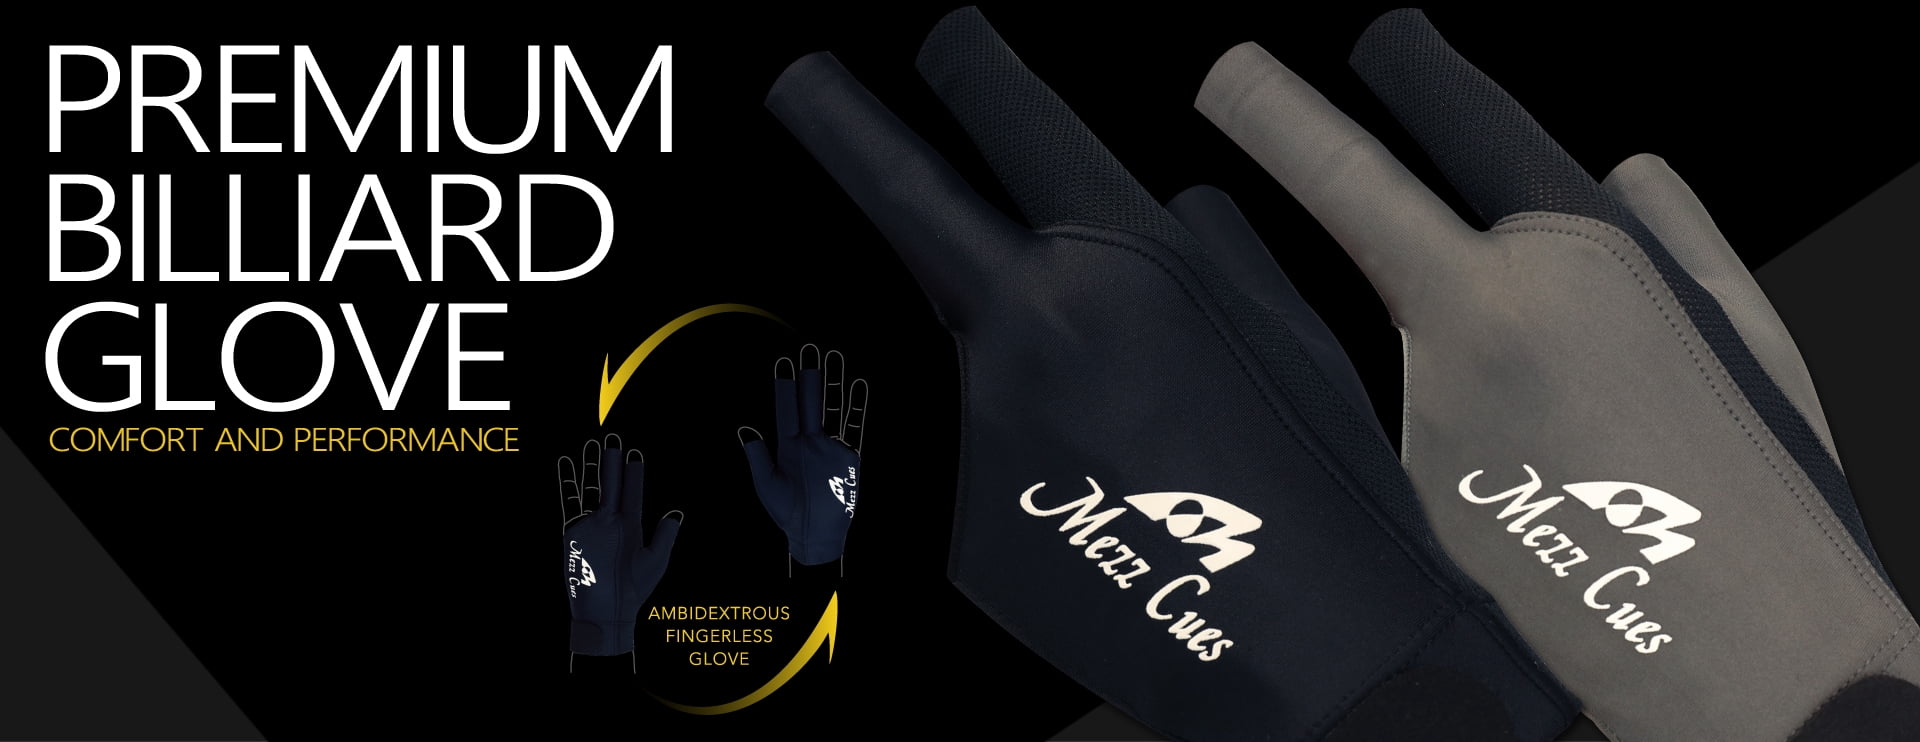 Fits Either Hand Mezz Premium Billiard Glove 